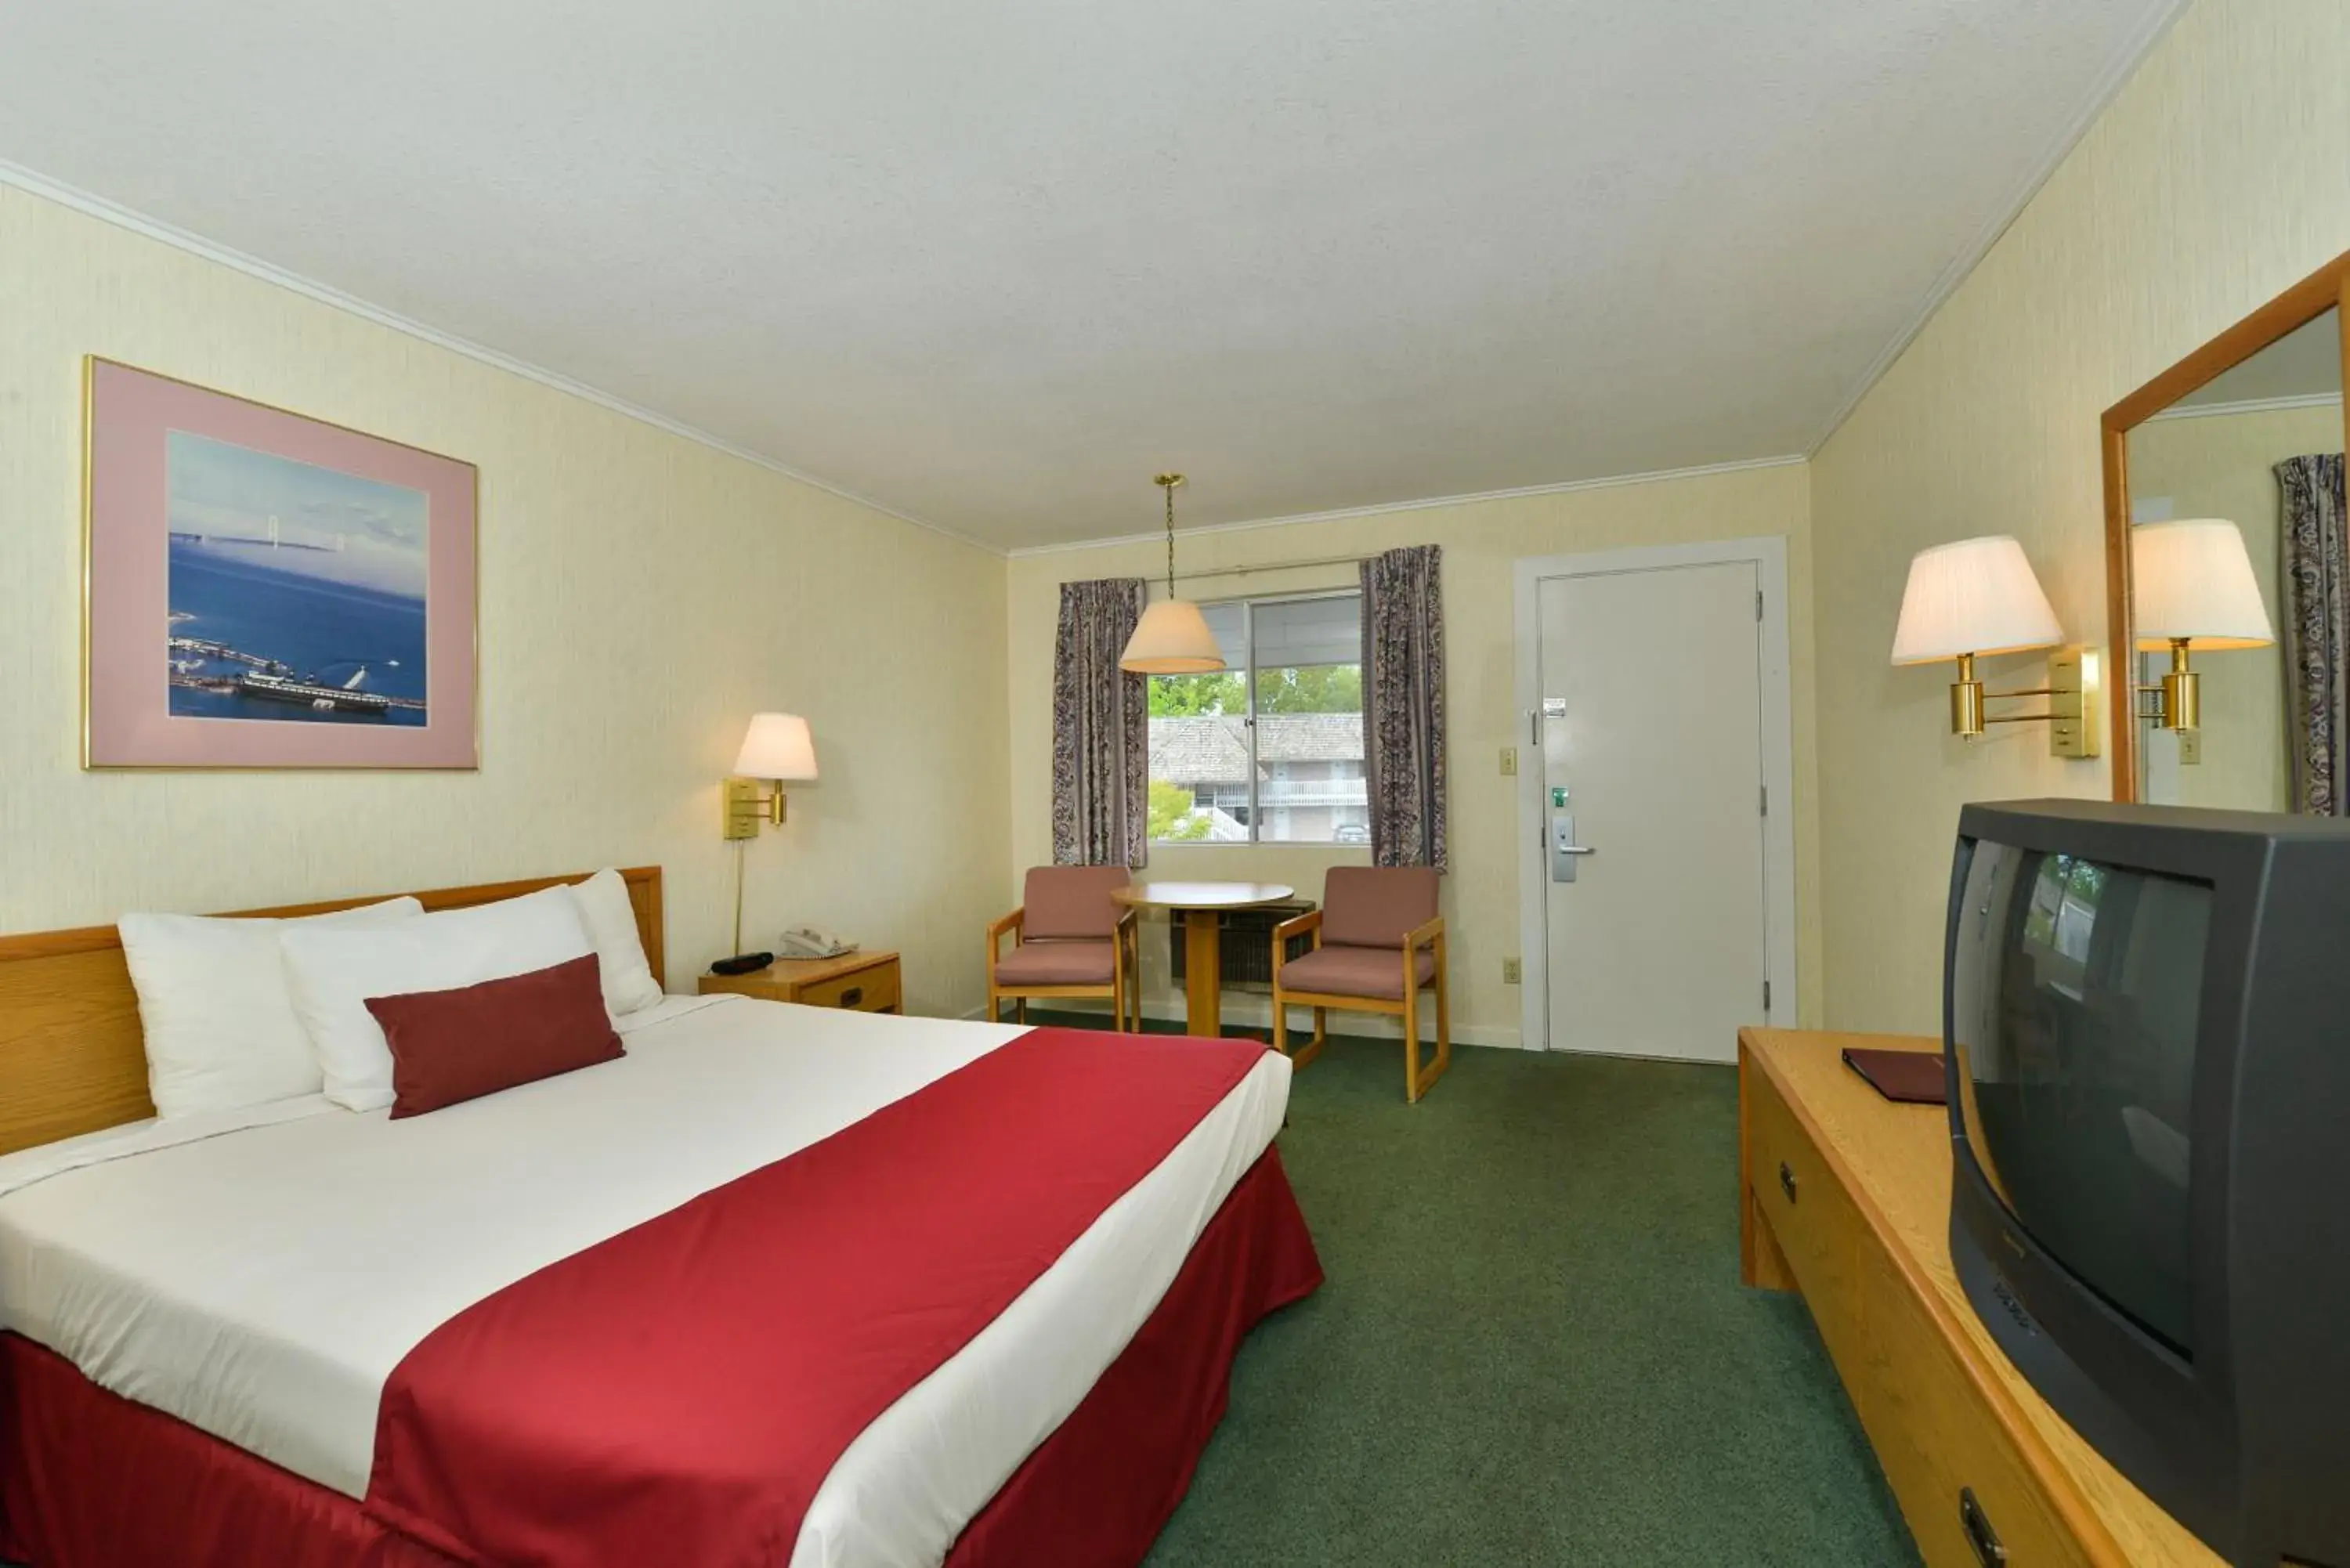 Bedroom, TV/Entertainment Center in Americas Best Value Inn Mackinaw City